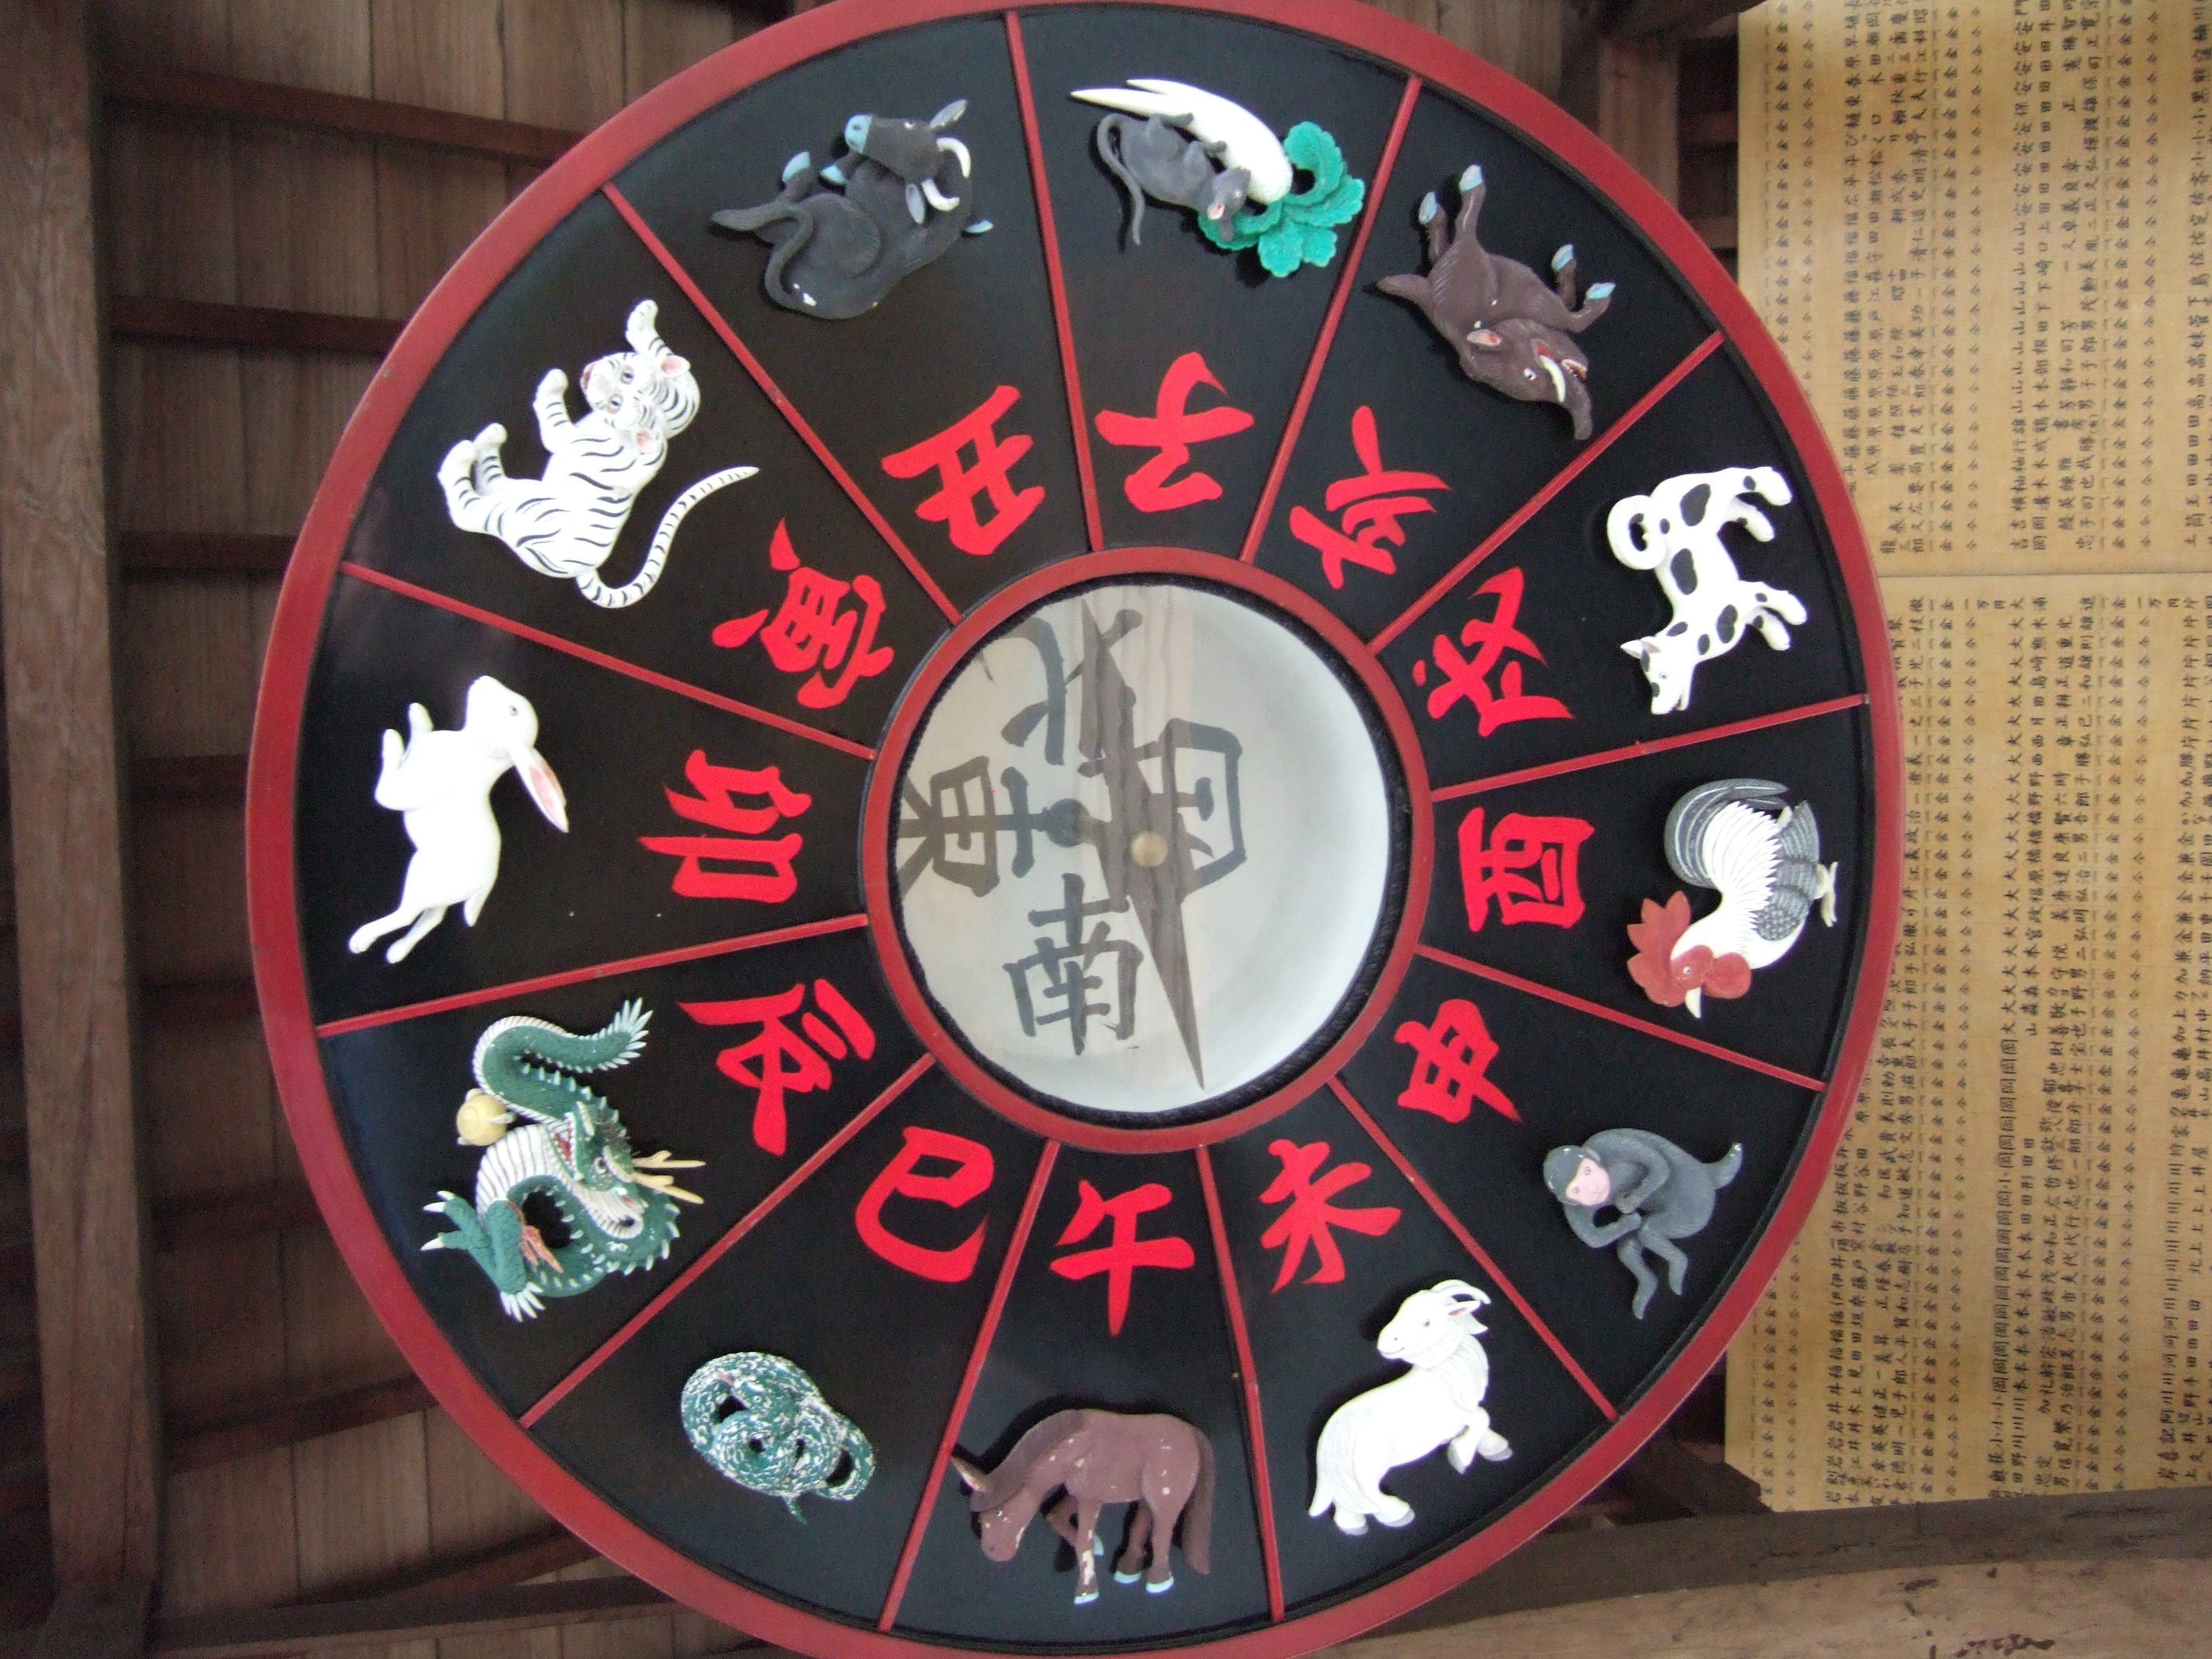 Imagem com todos os signos da Astrologia Chinesa, em círculo.